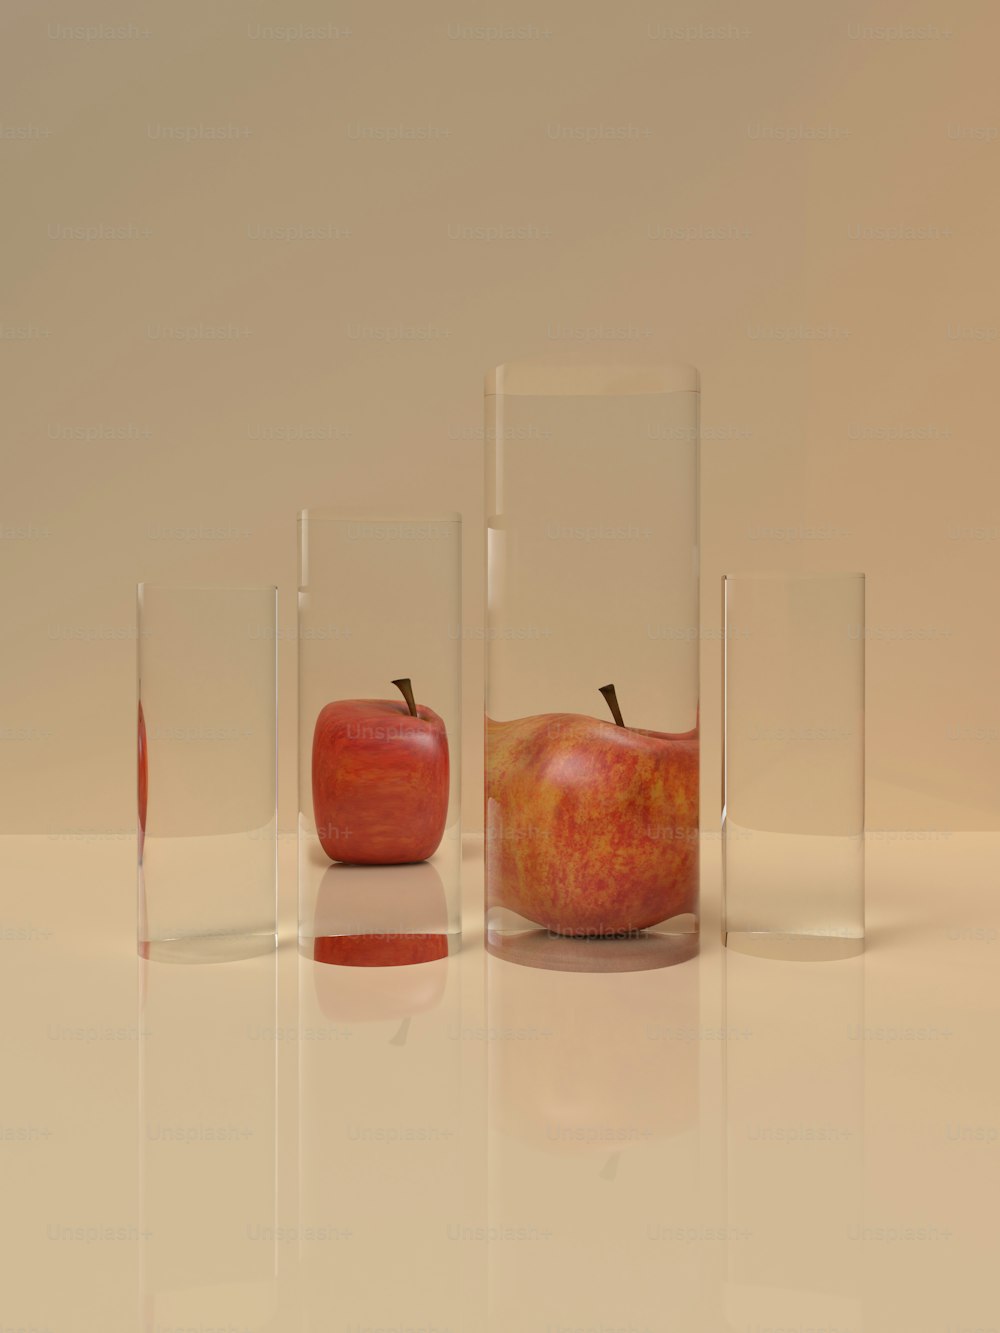 Un grupo de tres jarrones de vidrio con manzanas en ellos